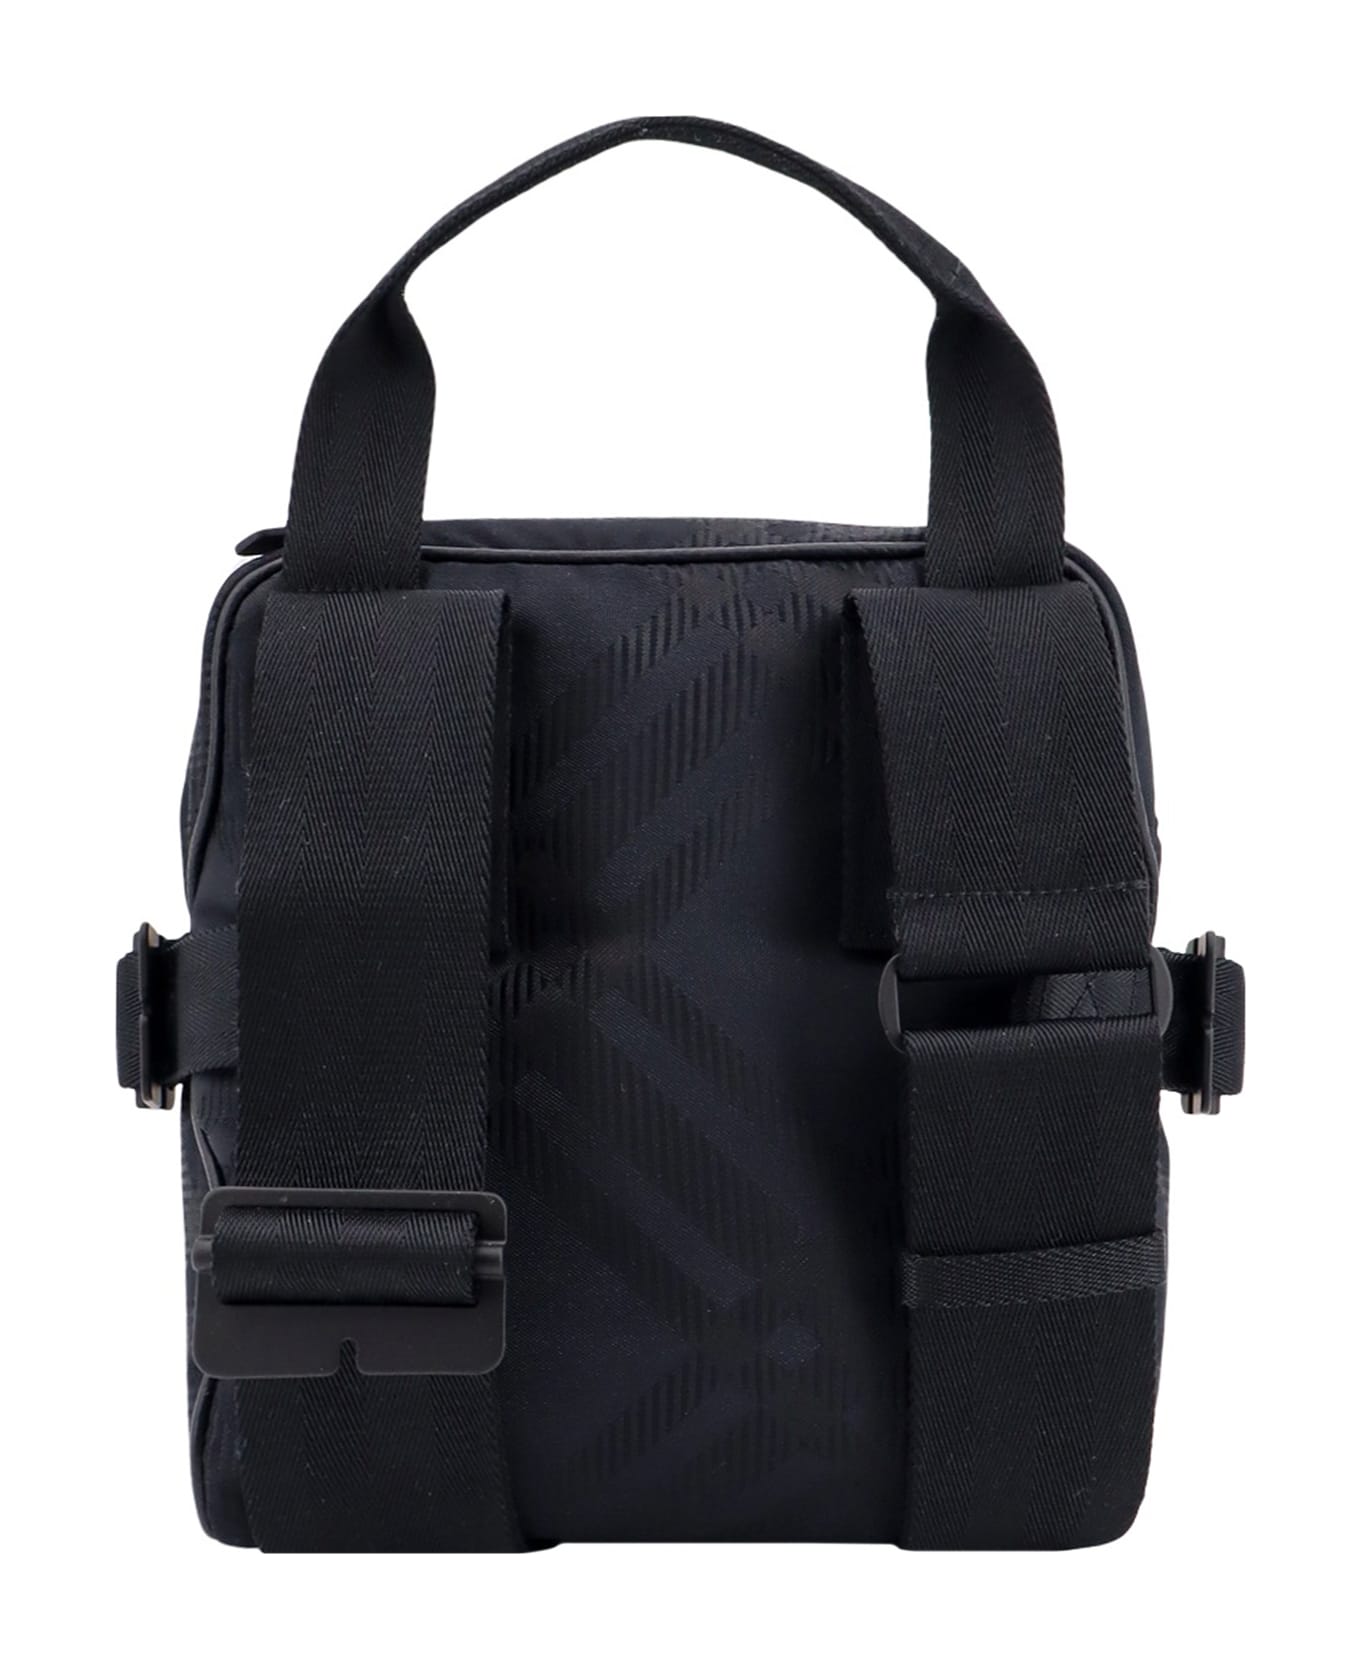 Burberry Check Shoulder Bag - Black